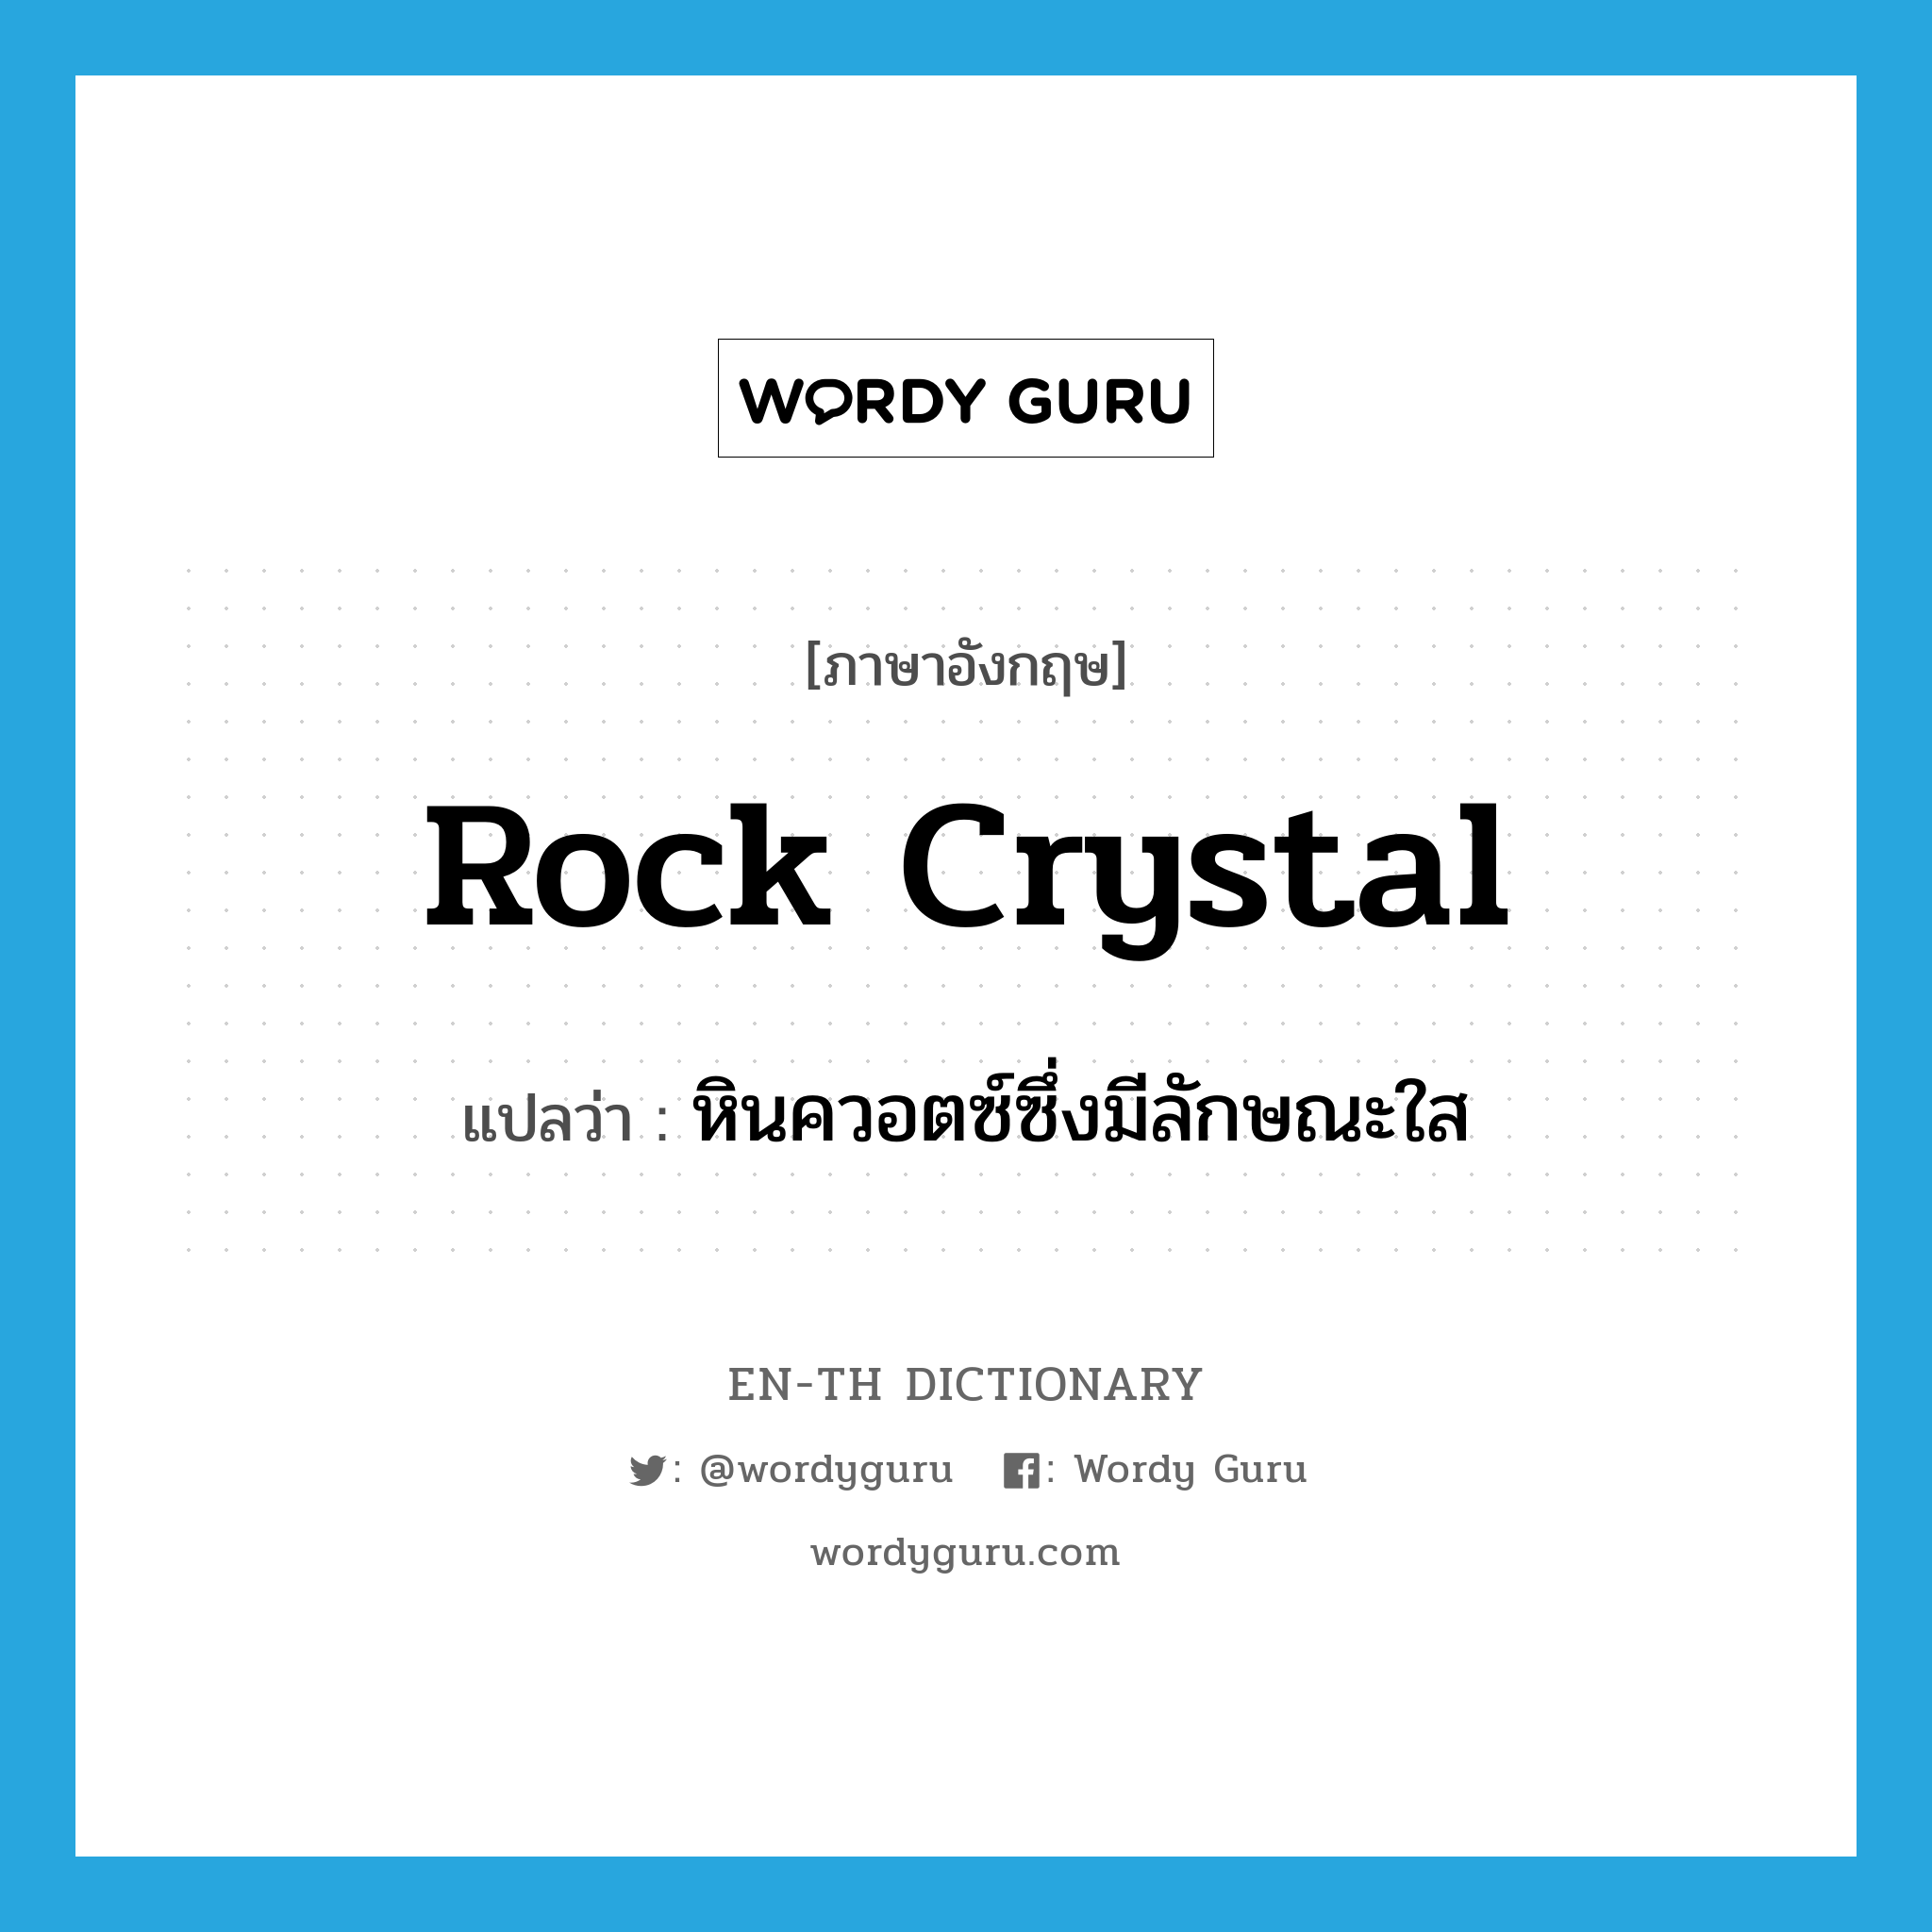 rock crystal แปลว่า?, คำศัพท์ภาษาอังกฤษ rock crystal แปลว่า หินควอตซ์ซึ่งมีลักษณะใส ประเภท N หมวด N